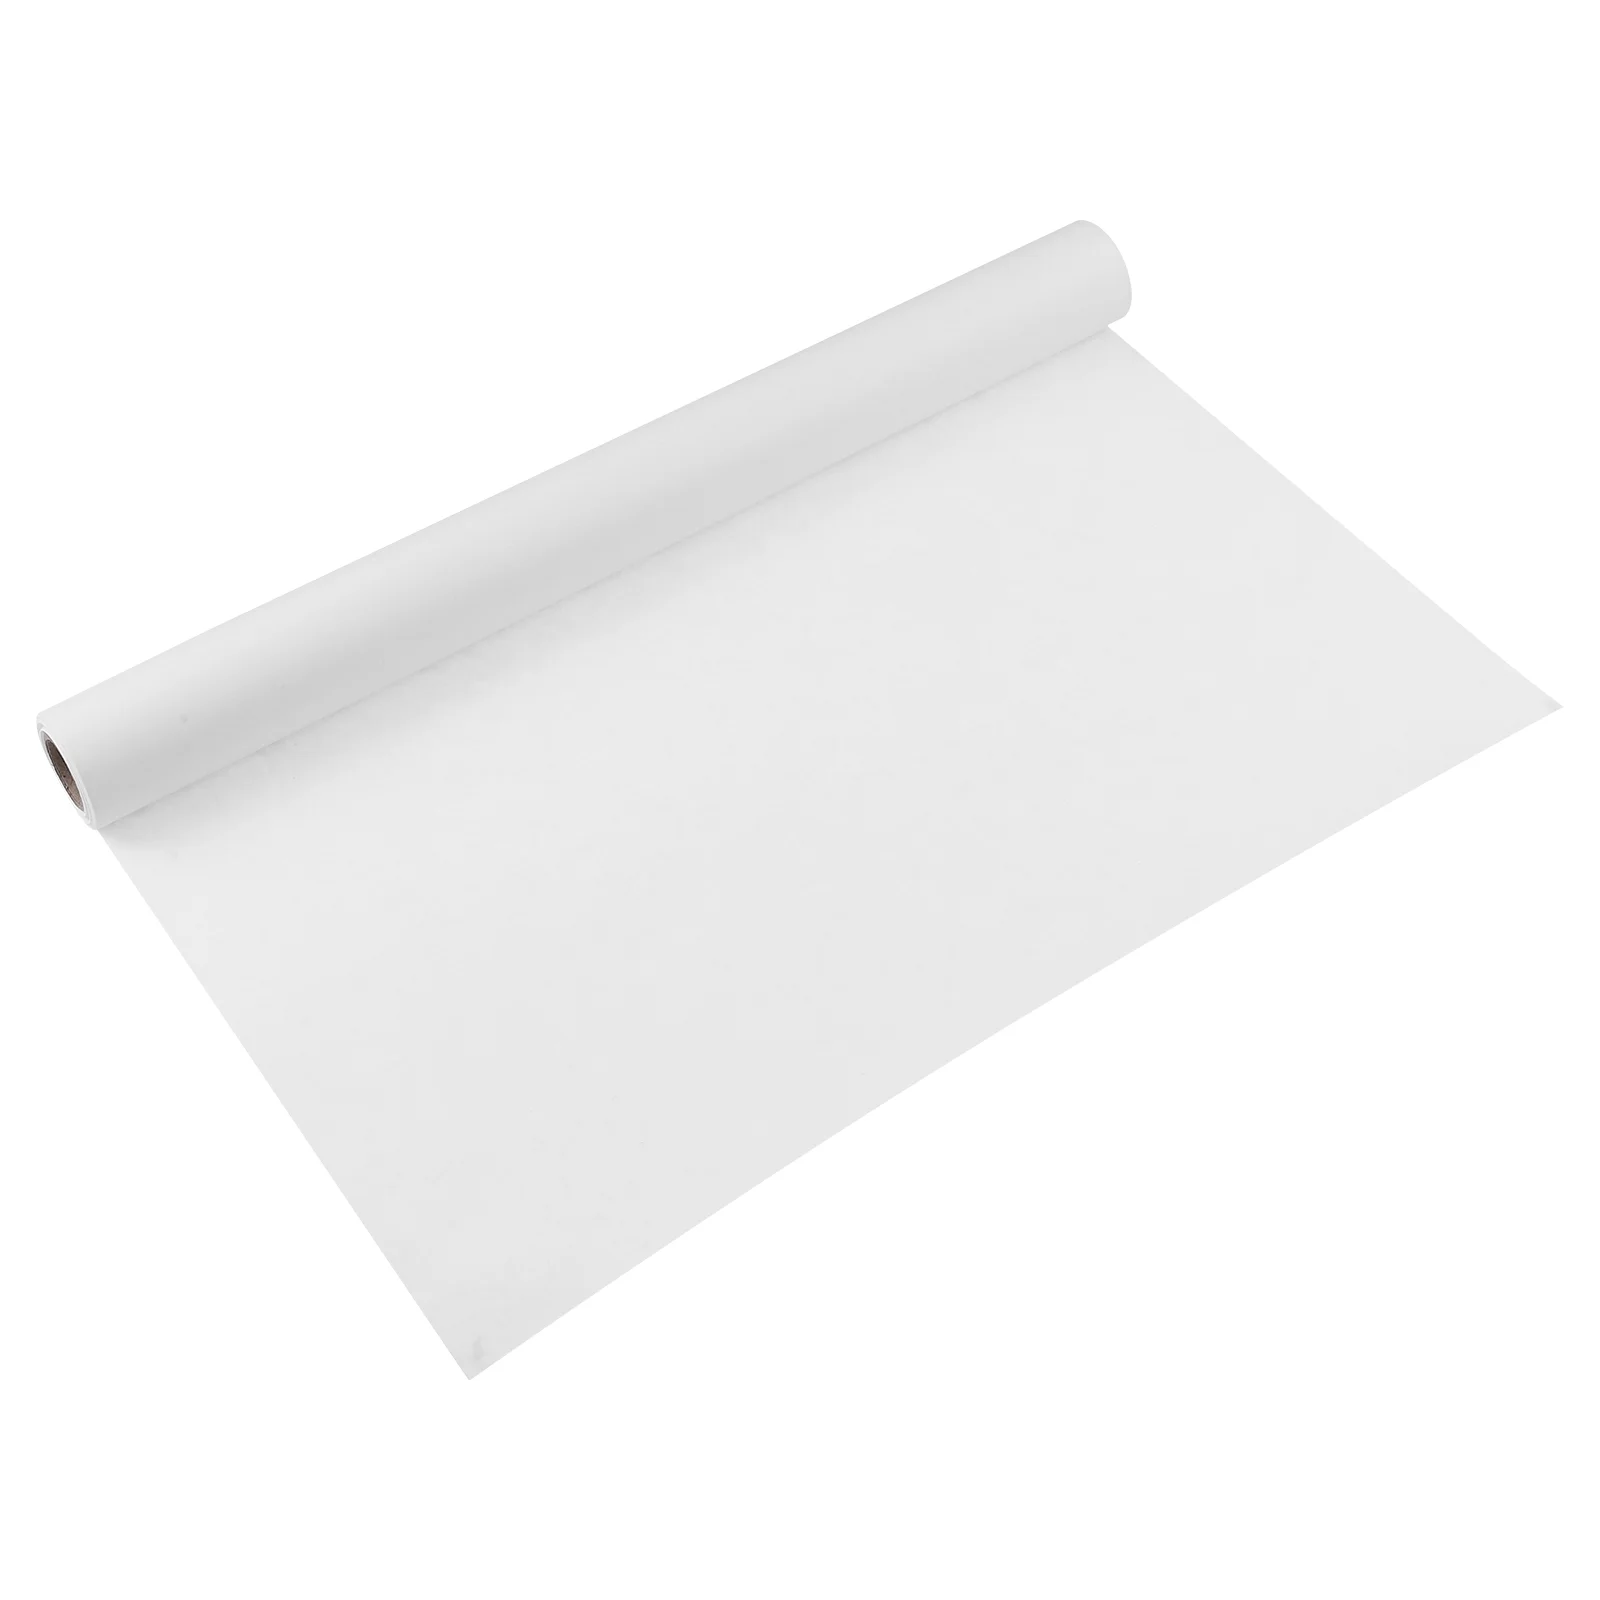 

Рулон белой крафт-бумаги, рулон самодельной бумаги 17x353 для рисования на мольберте, рисования, набросков, граффити, упаковки подарков